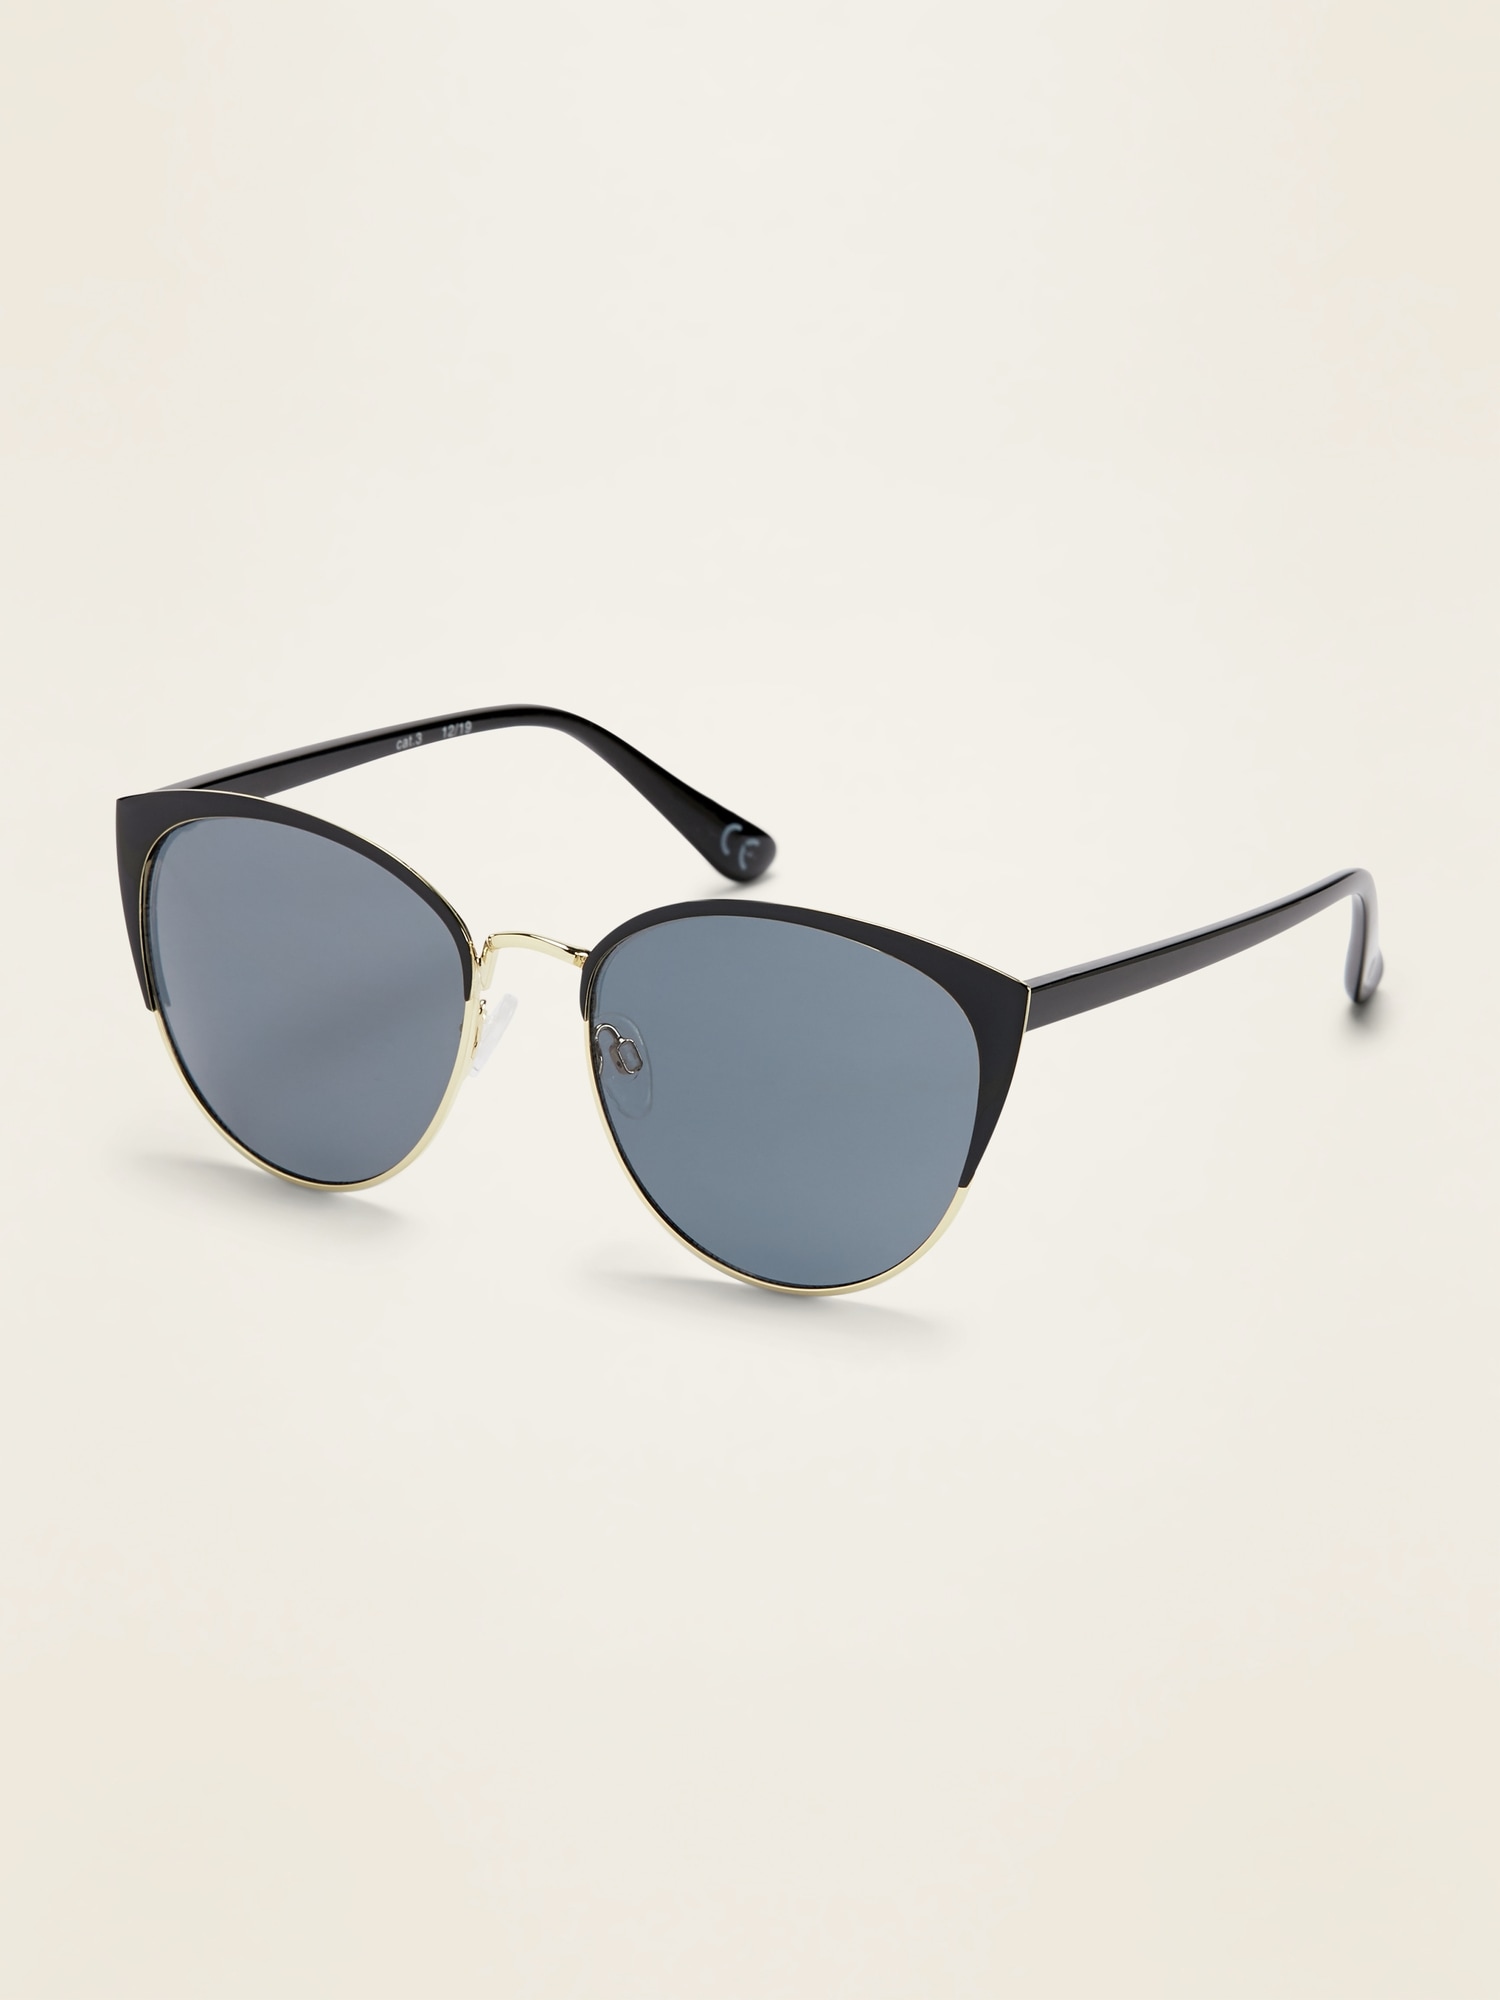 Old Navy Half-Frame Cat-Eye Sunglasses for Women black. 1